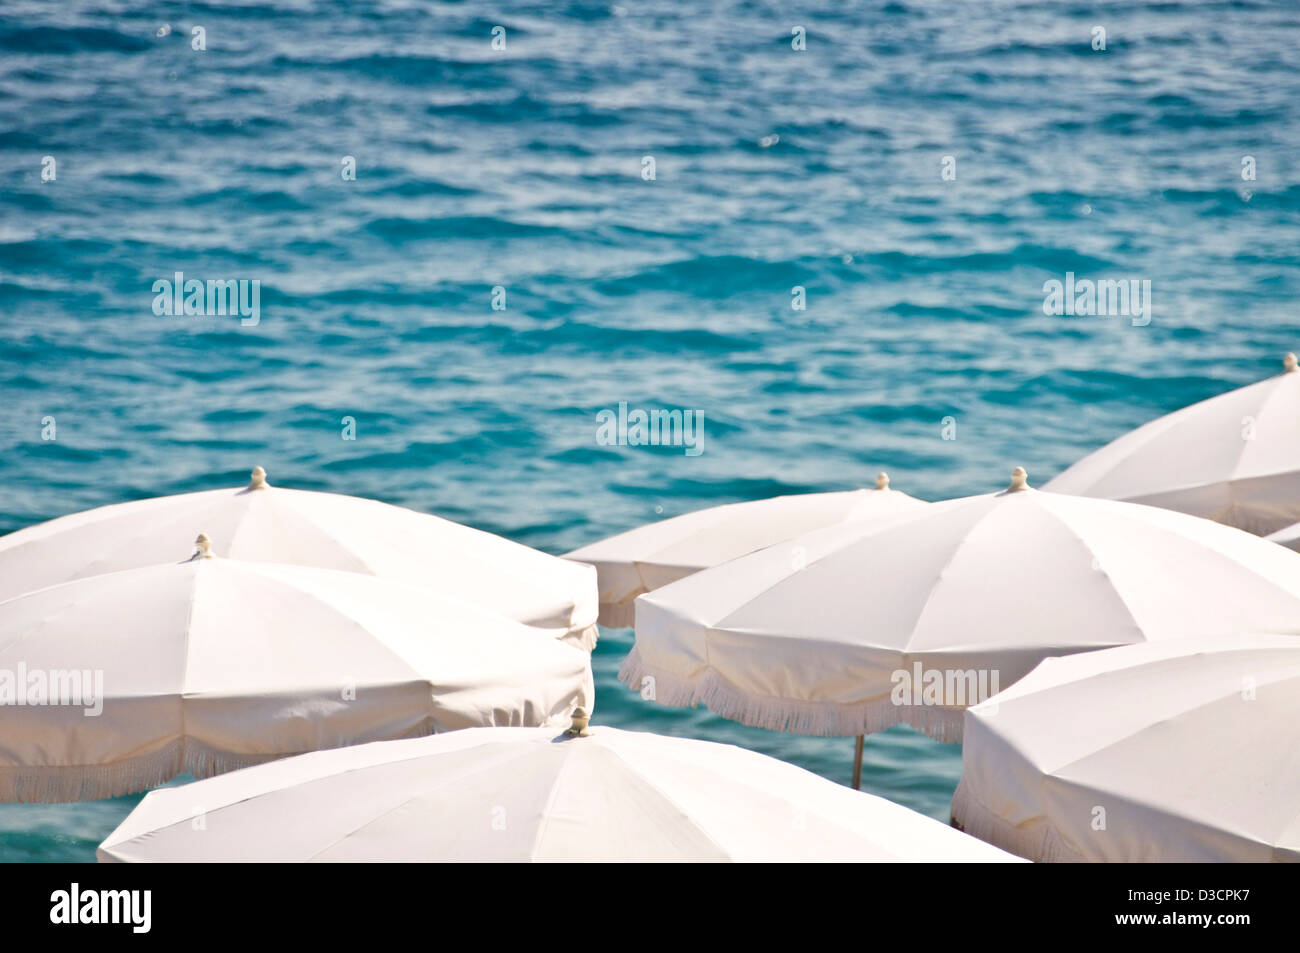 Playa privada con sombrillas de playa blanca, en el fondo del mar vista desde arriba - Niza, Francia Foto de stock